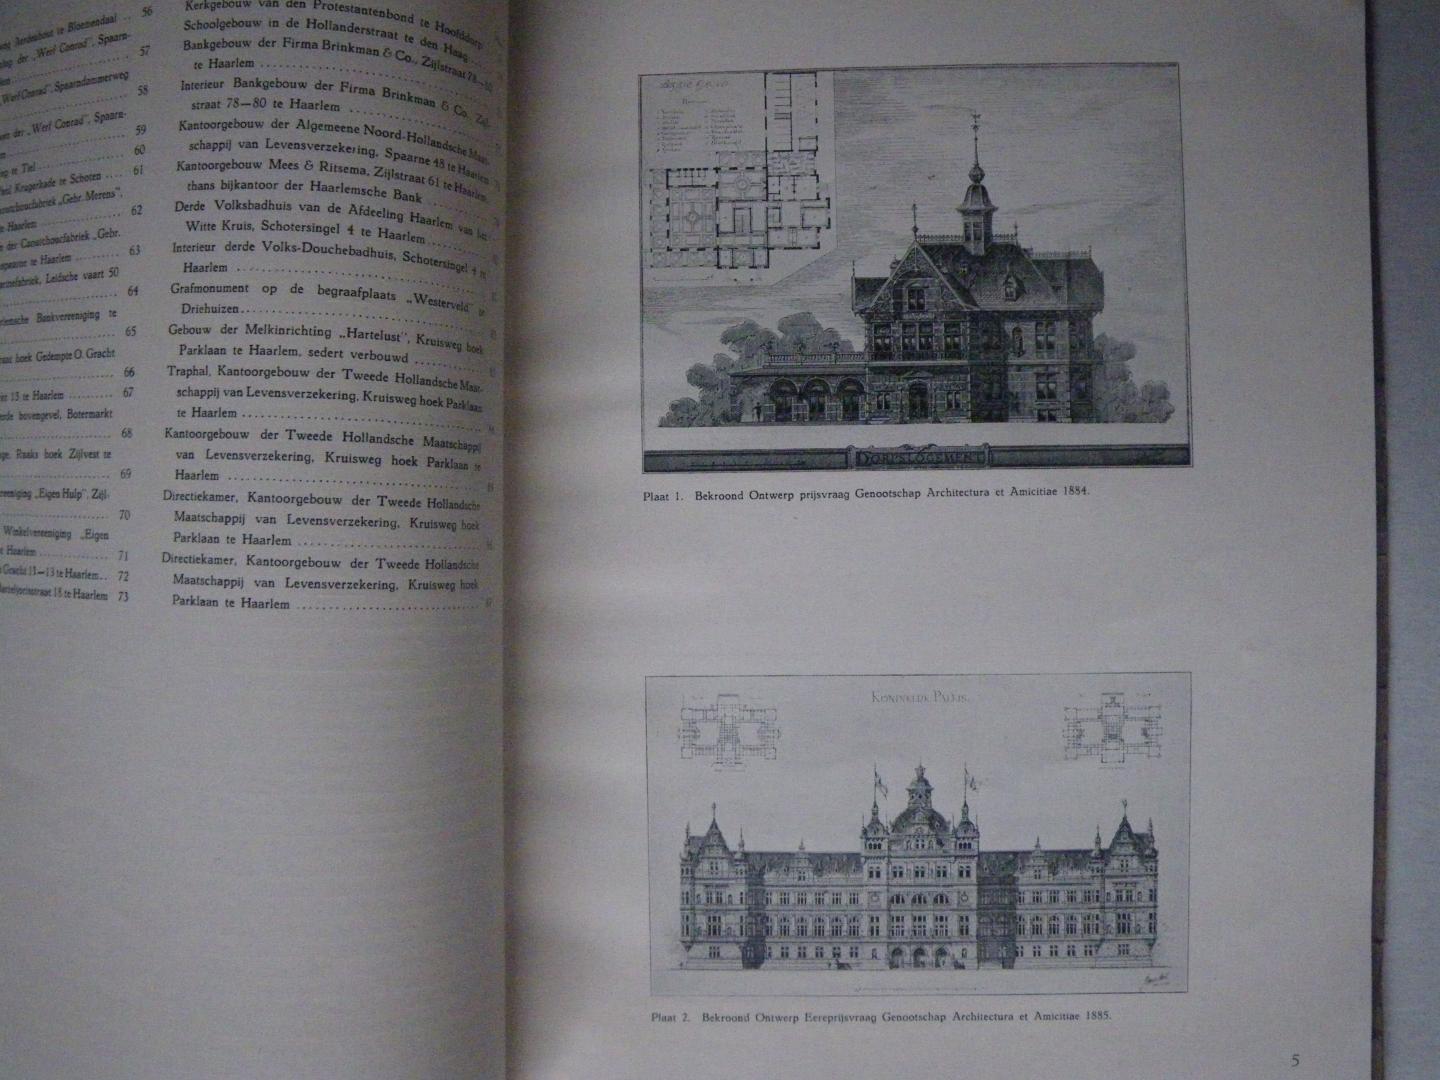 Jacob van den Ban - Jb van den Ban, architect Haarlem 1886-1918: uitgevoerde gebouwen, projecten, enz